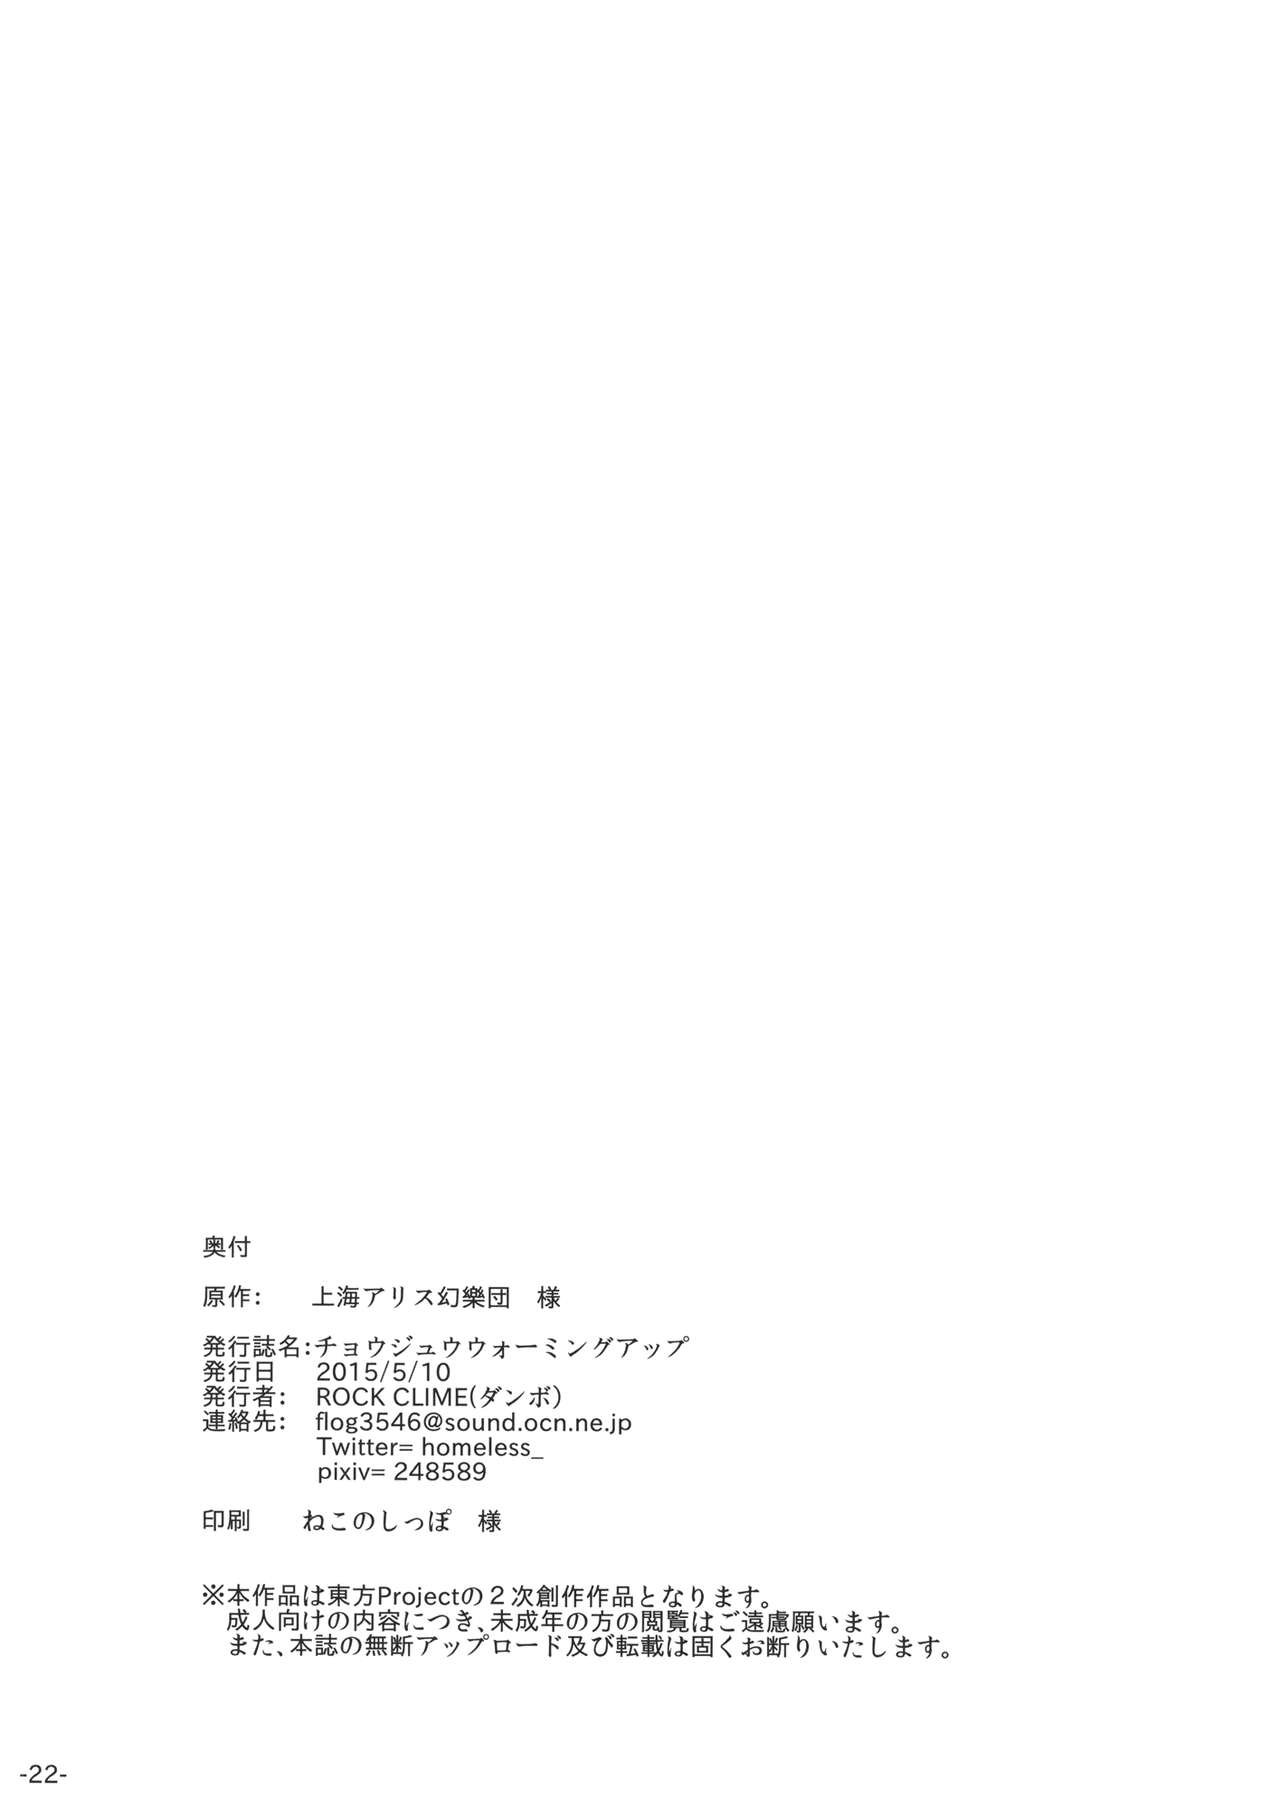 (例大祭12) [ROCK CLIME (ダンボ)] チョウジュウウォーミングアップ (東方Project)